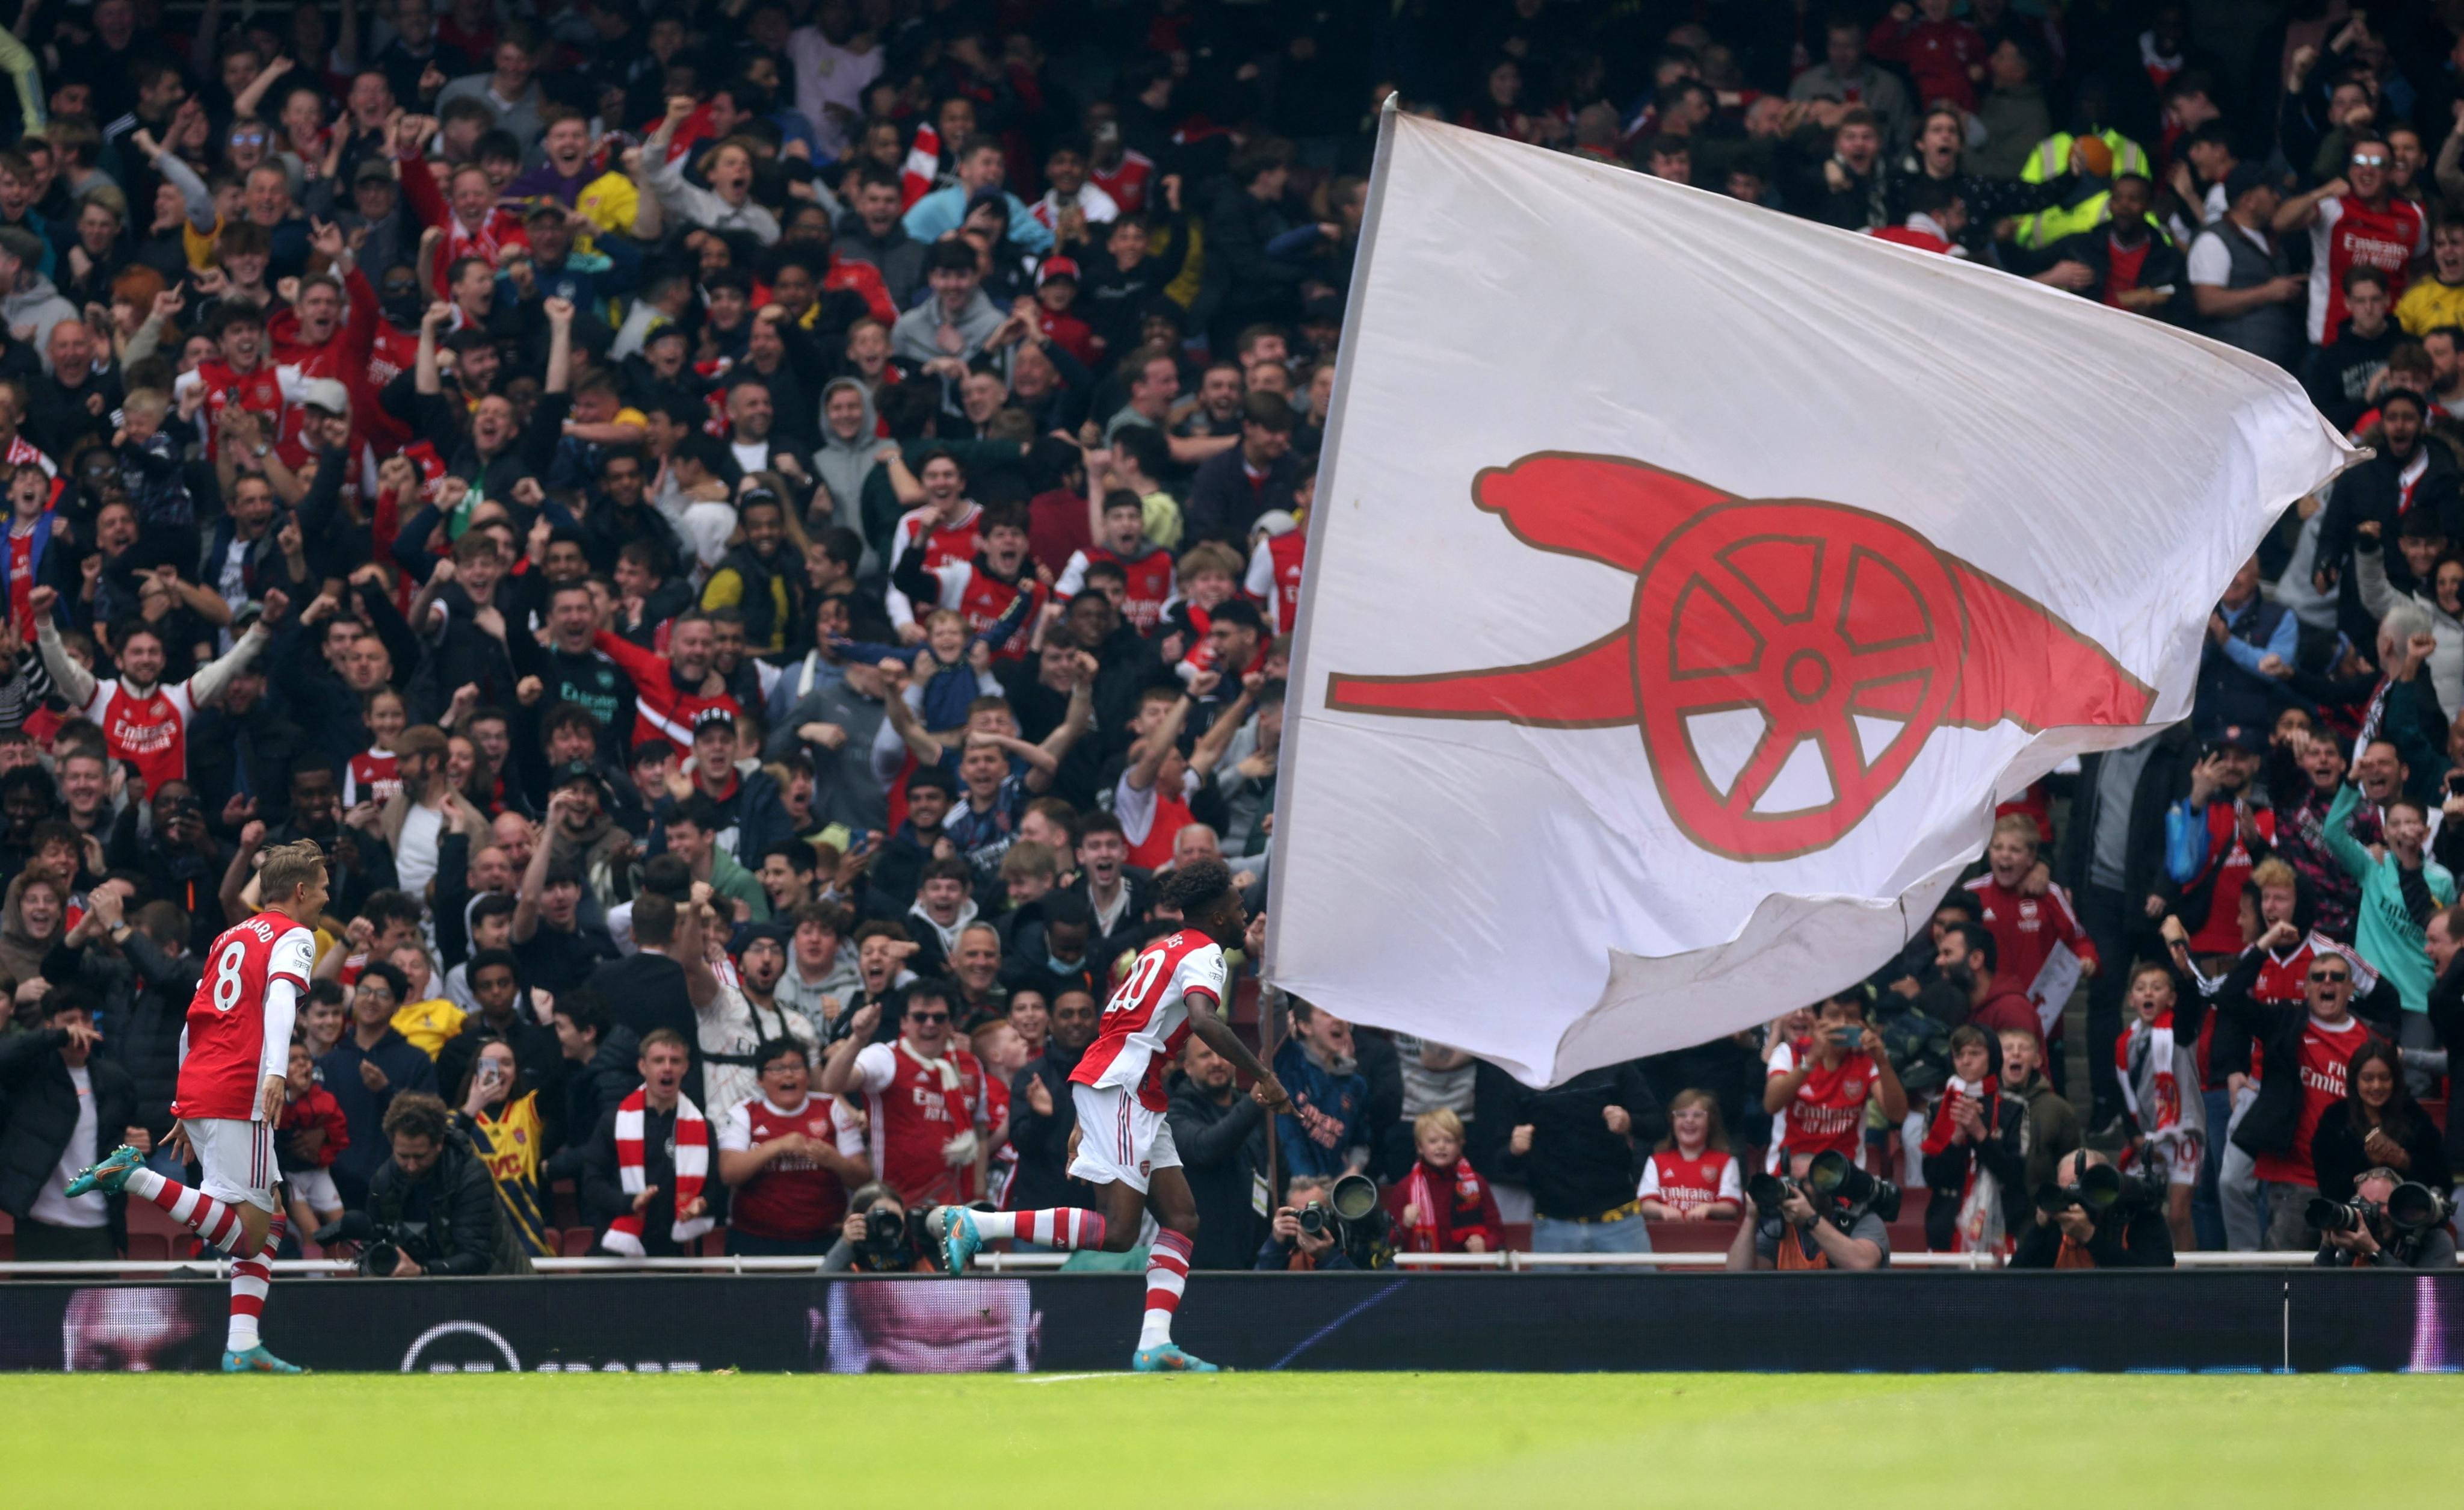 Liga Inggris: Menanti Keajaiban Arsenal di Akhir Pekan - JPNN.com